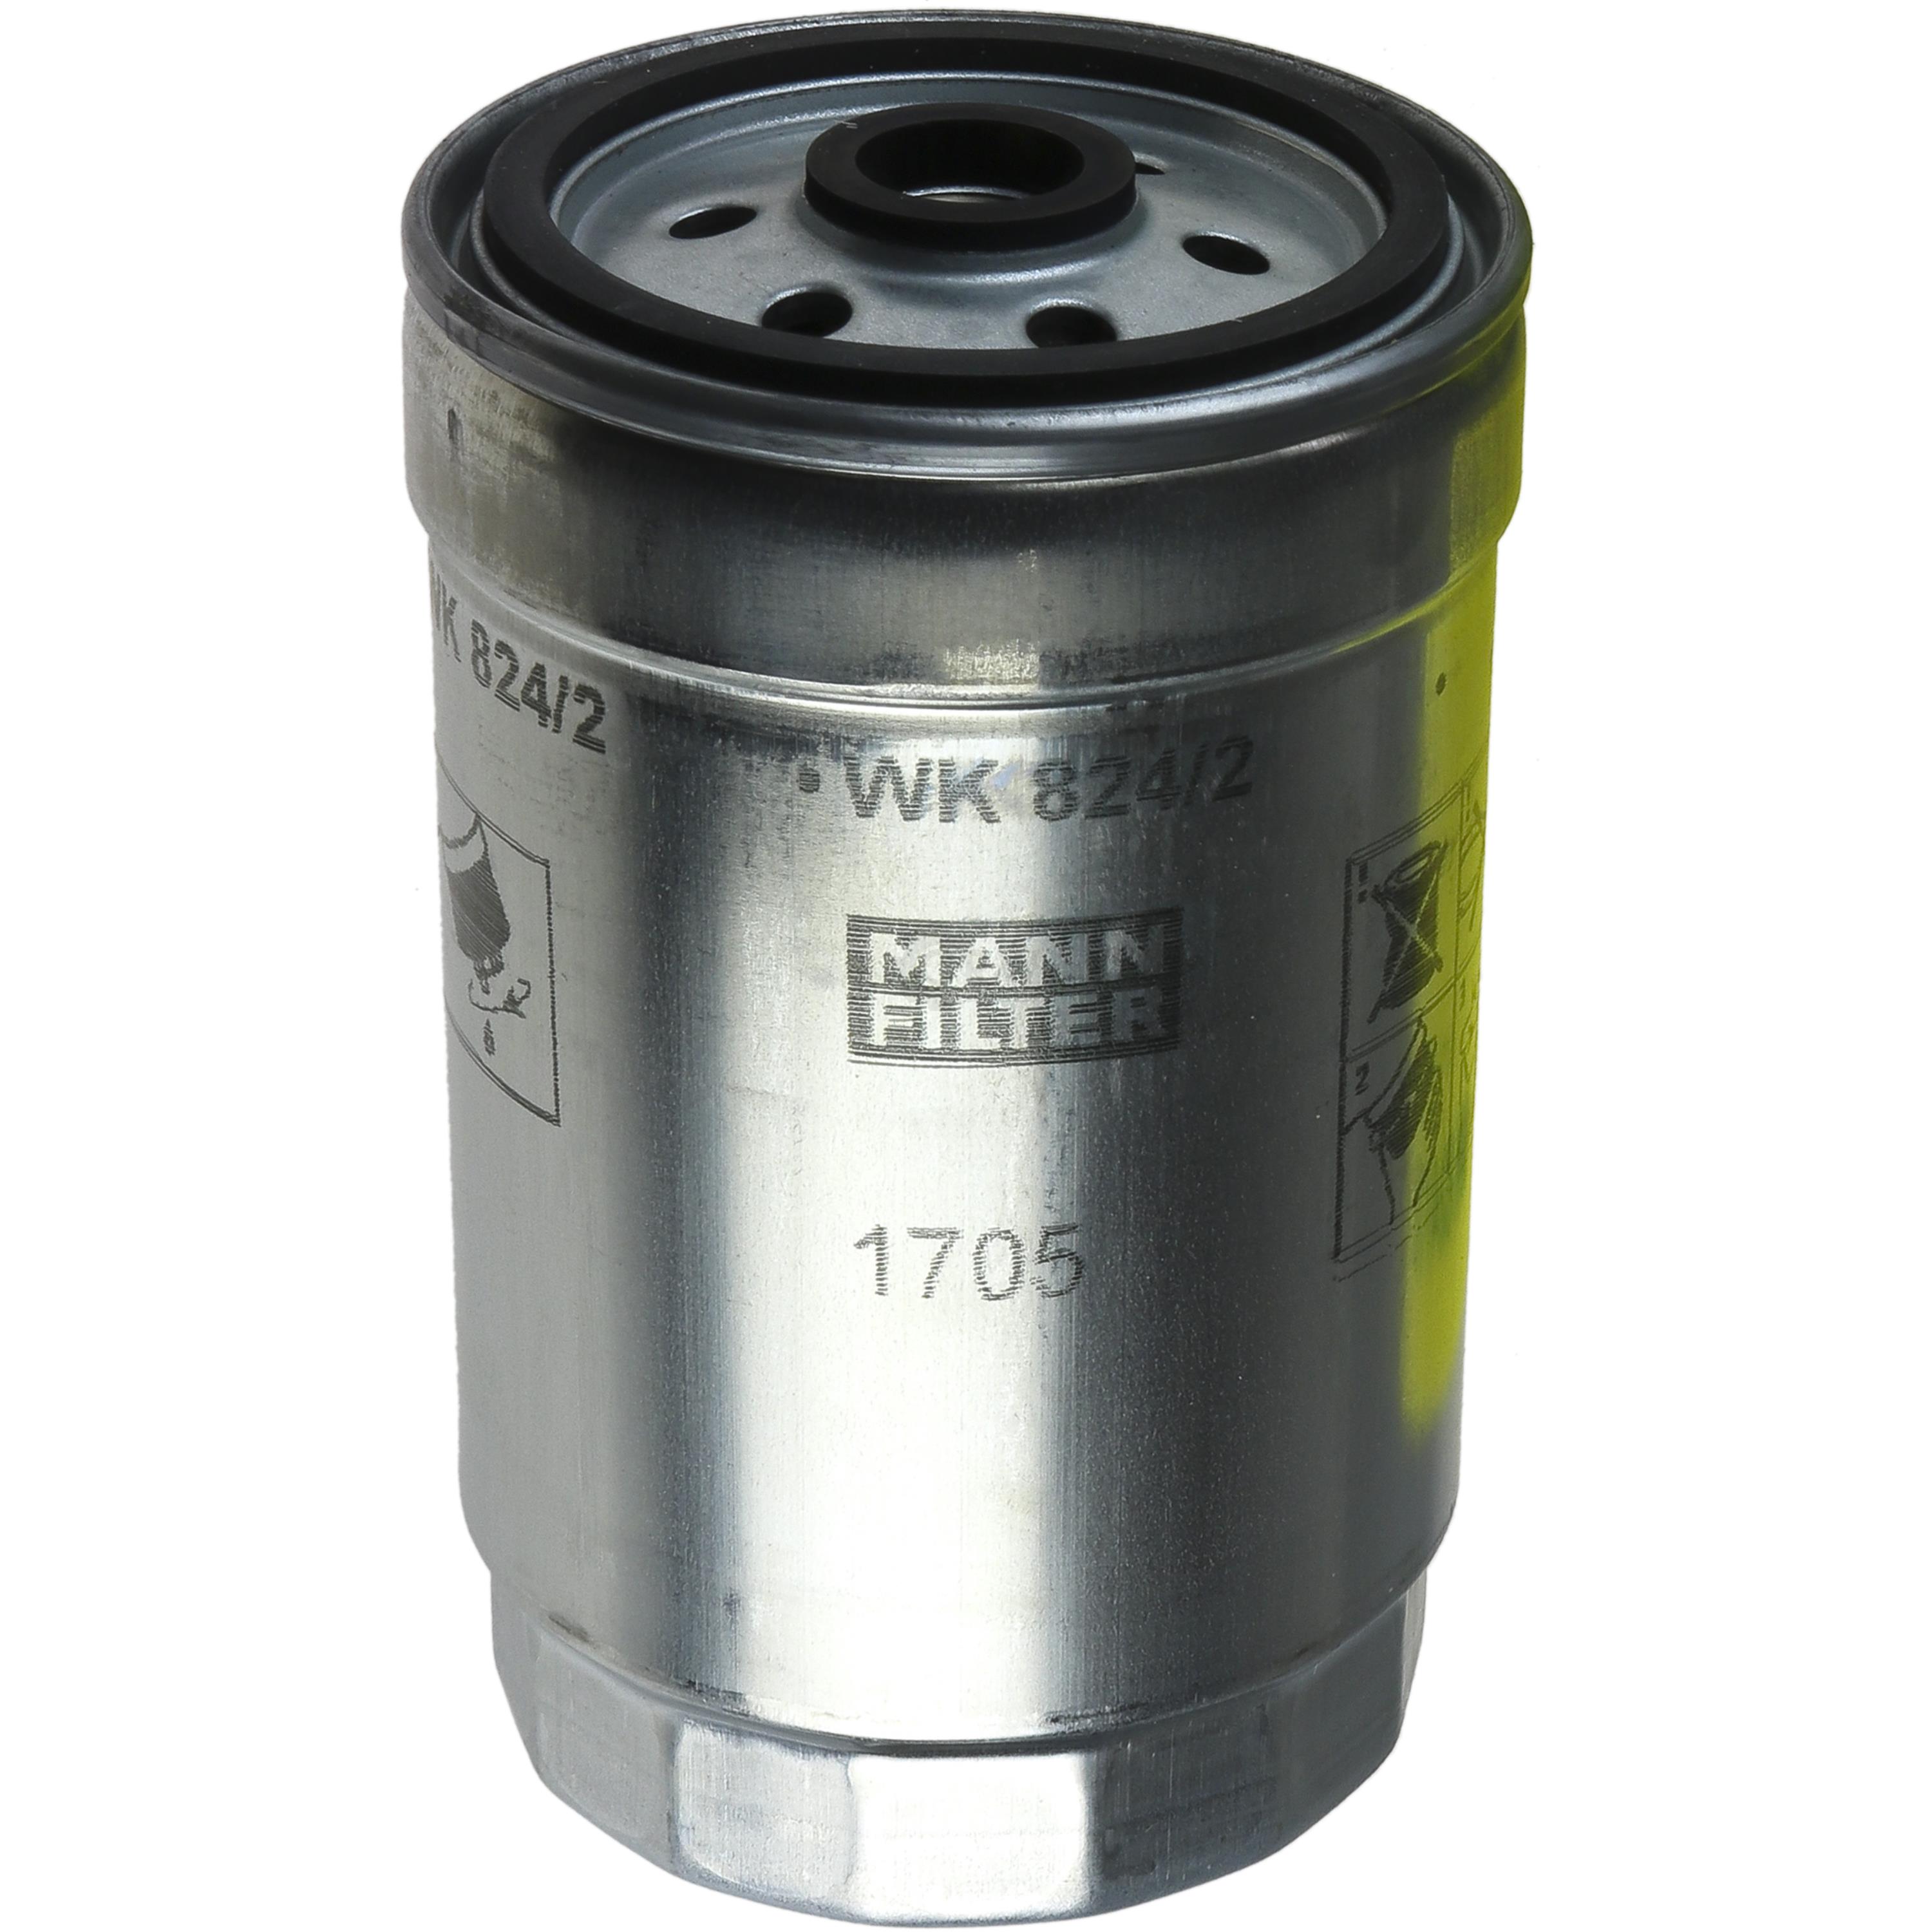 MANN-FILTER Kraftstofffilter WK 824/2 Fuel Filter